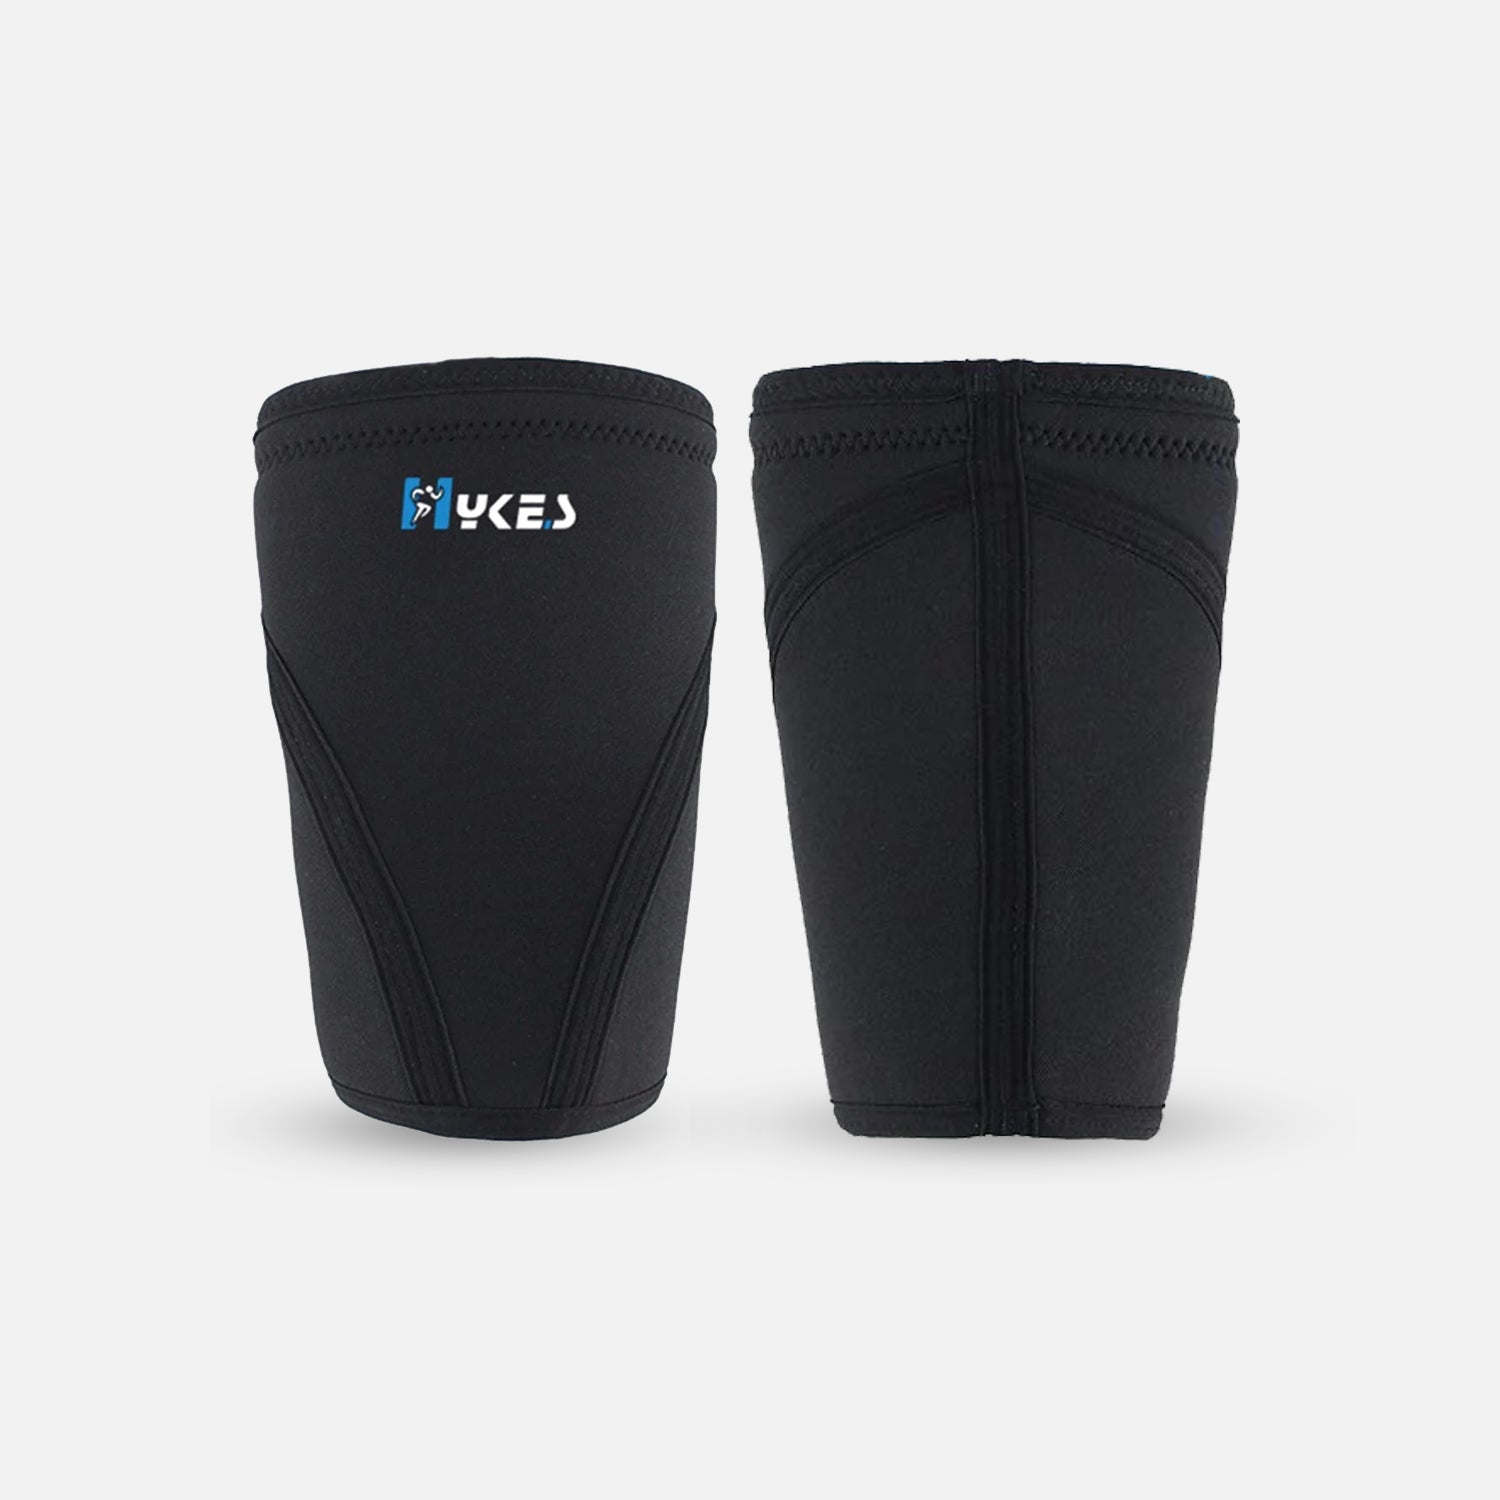 Buy Hykes Best Knee Sleeves for Crossfit, Running & Lifting Online